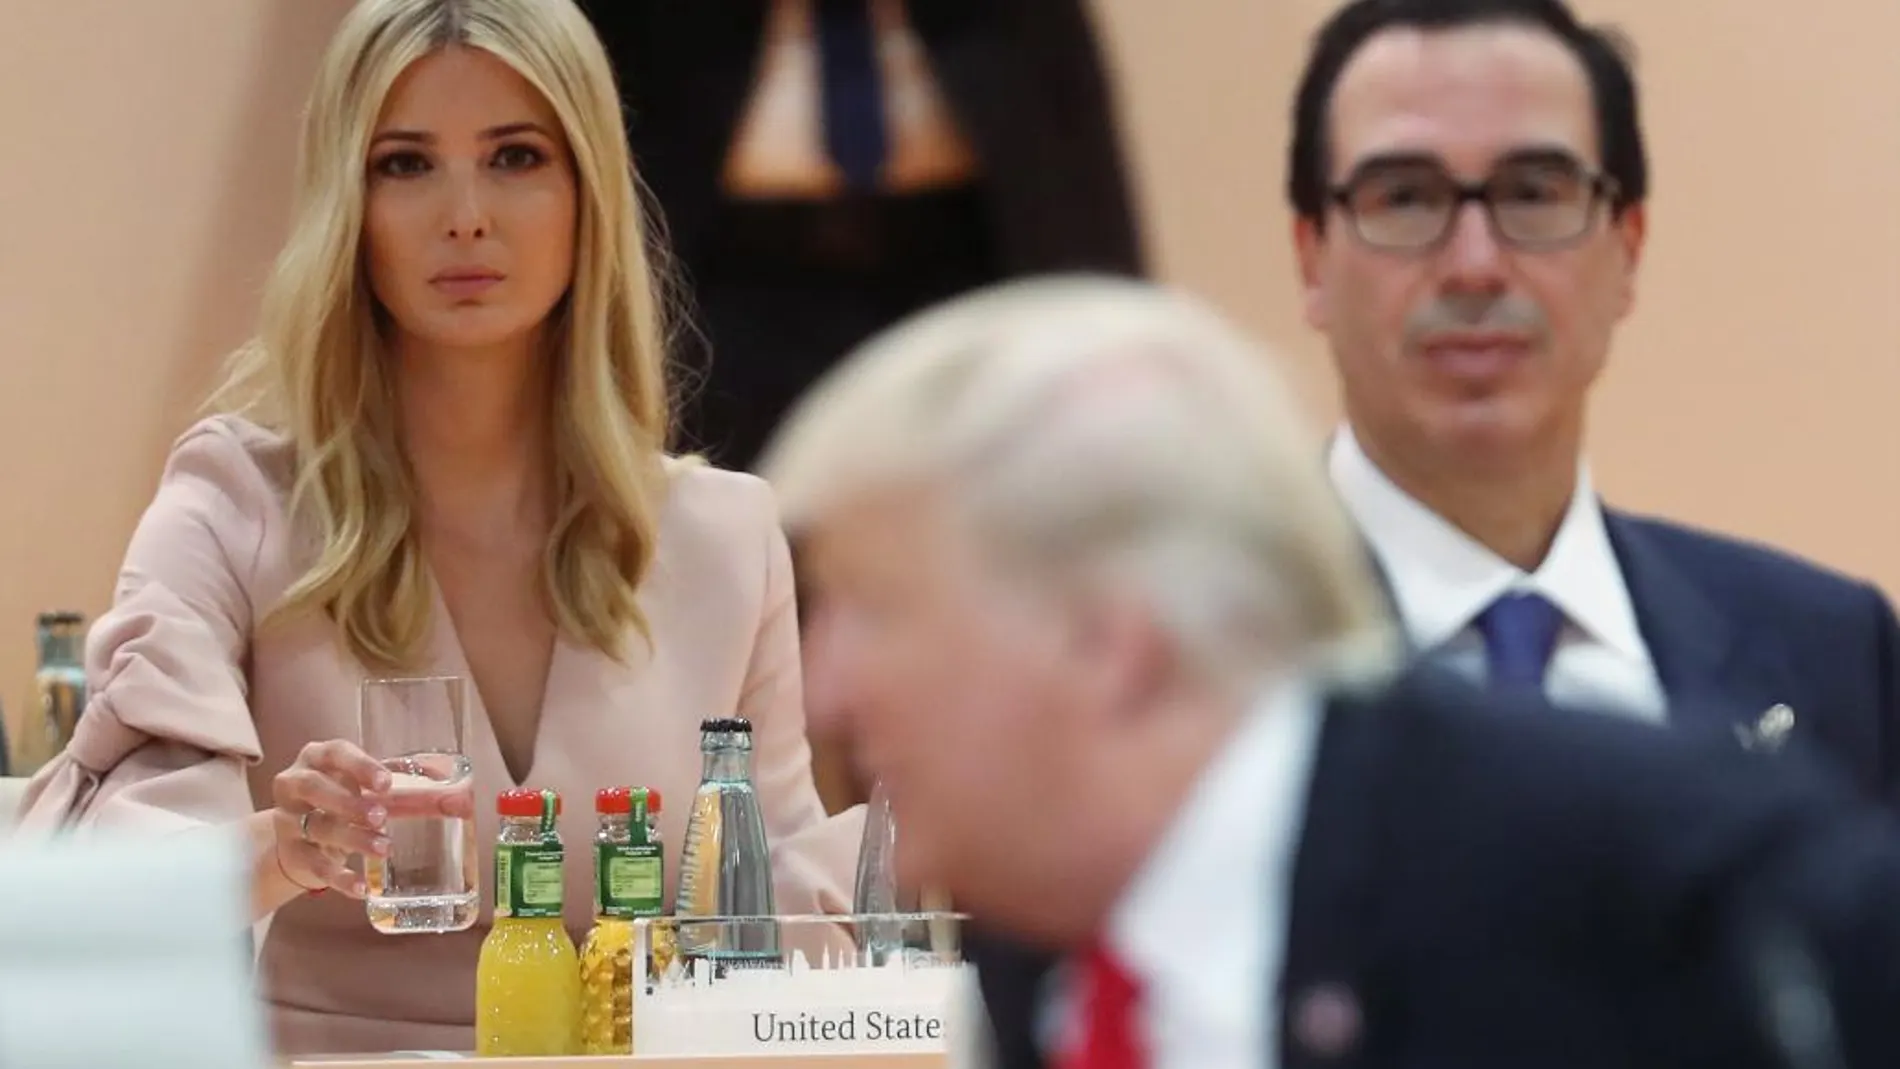 La hija del presidente de EE UU, Ivanka Trump, ocupó hasta en dos ocasiones el puesto de su padre en la Cumbre del G-20